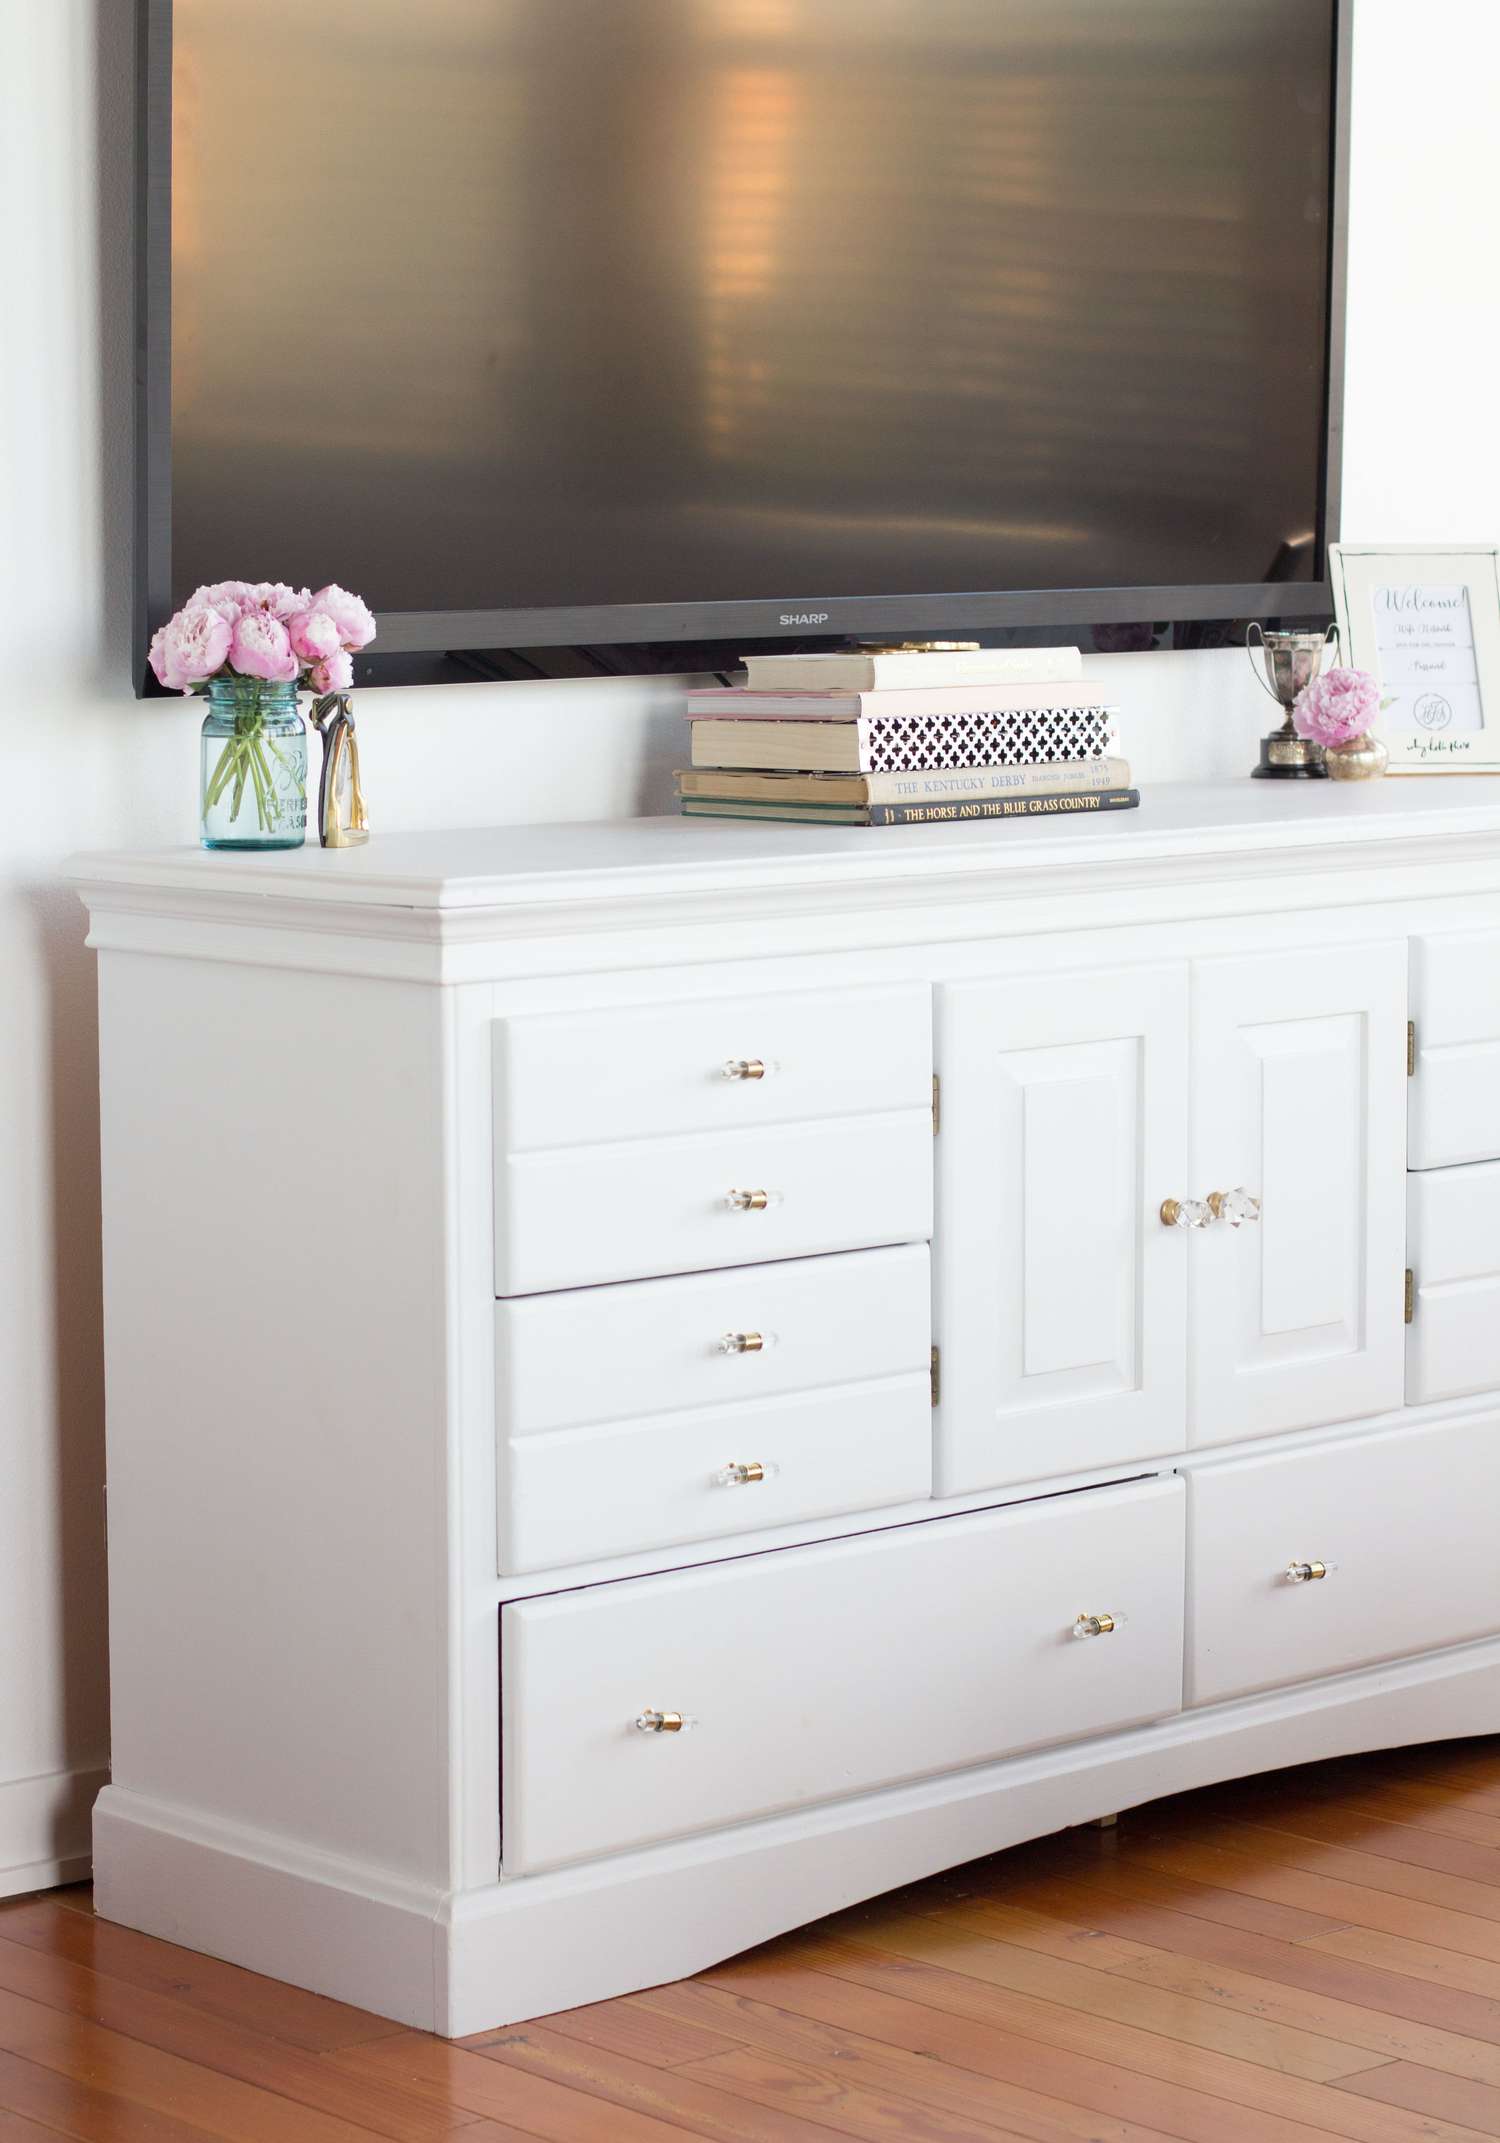 Gran televisor sobre un mueble consola blanco con libros y jarrones de flores